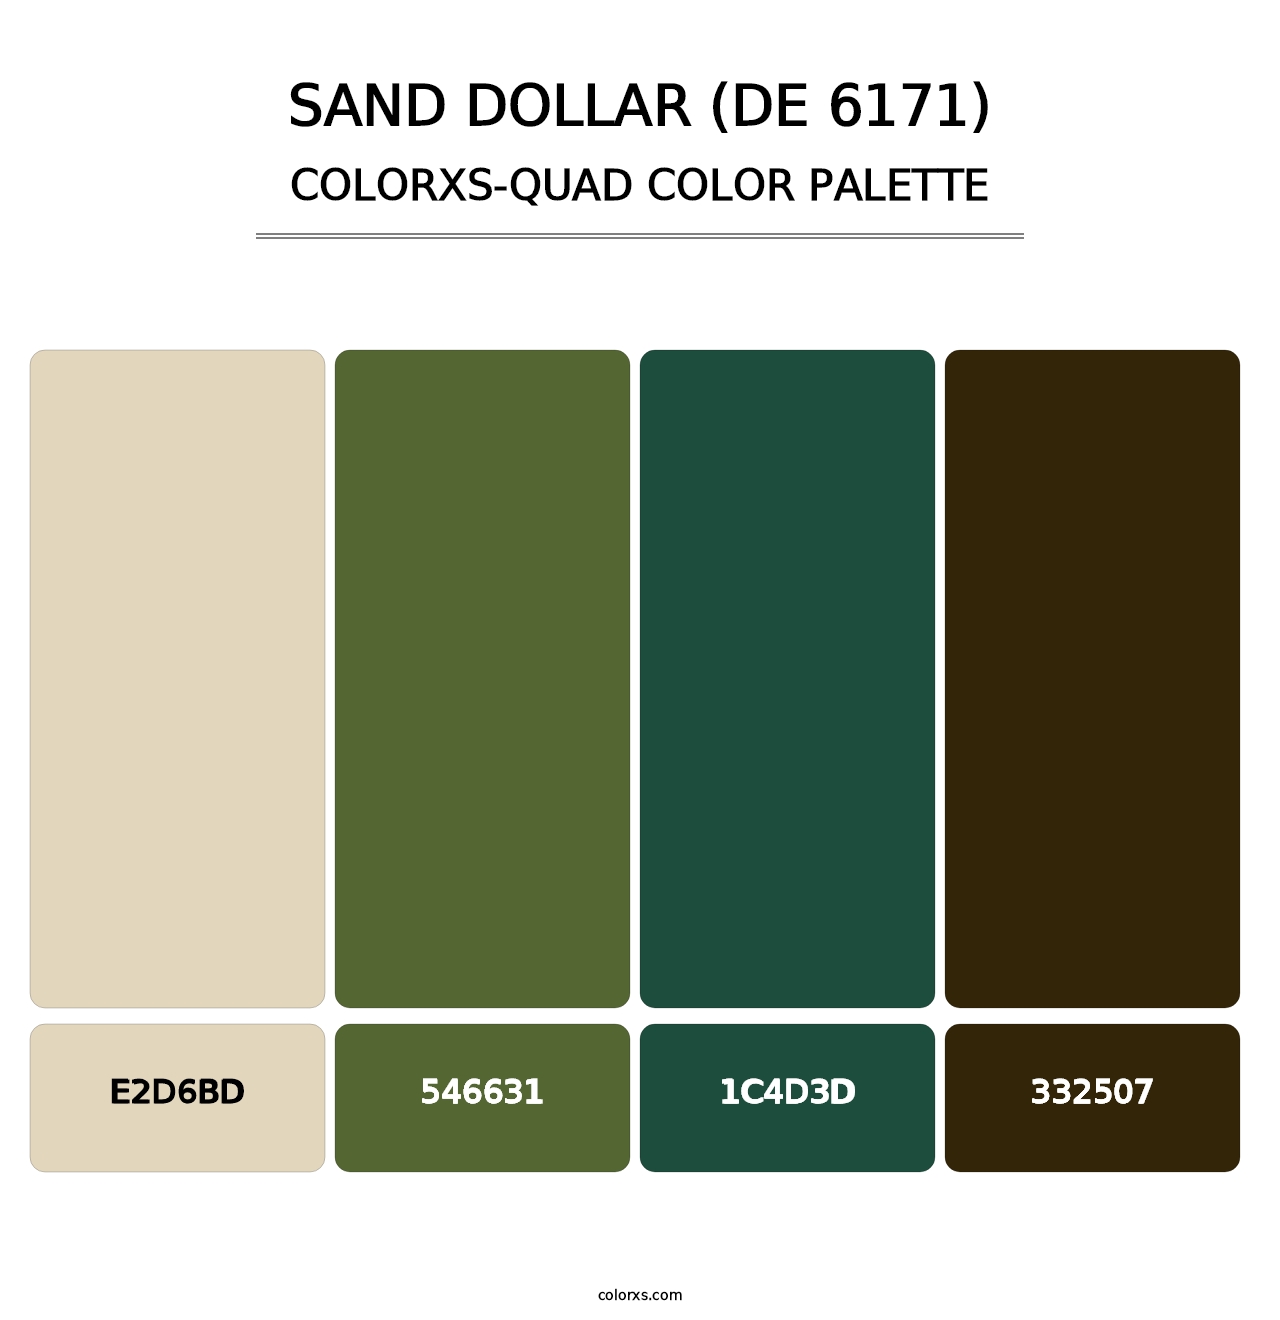 Sand Dollar (DE 6171) - Colorxs Quad Palette